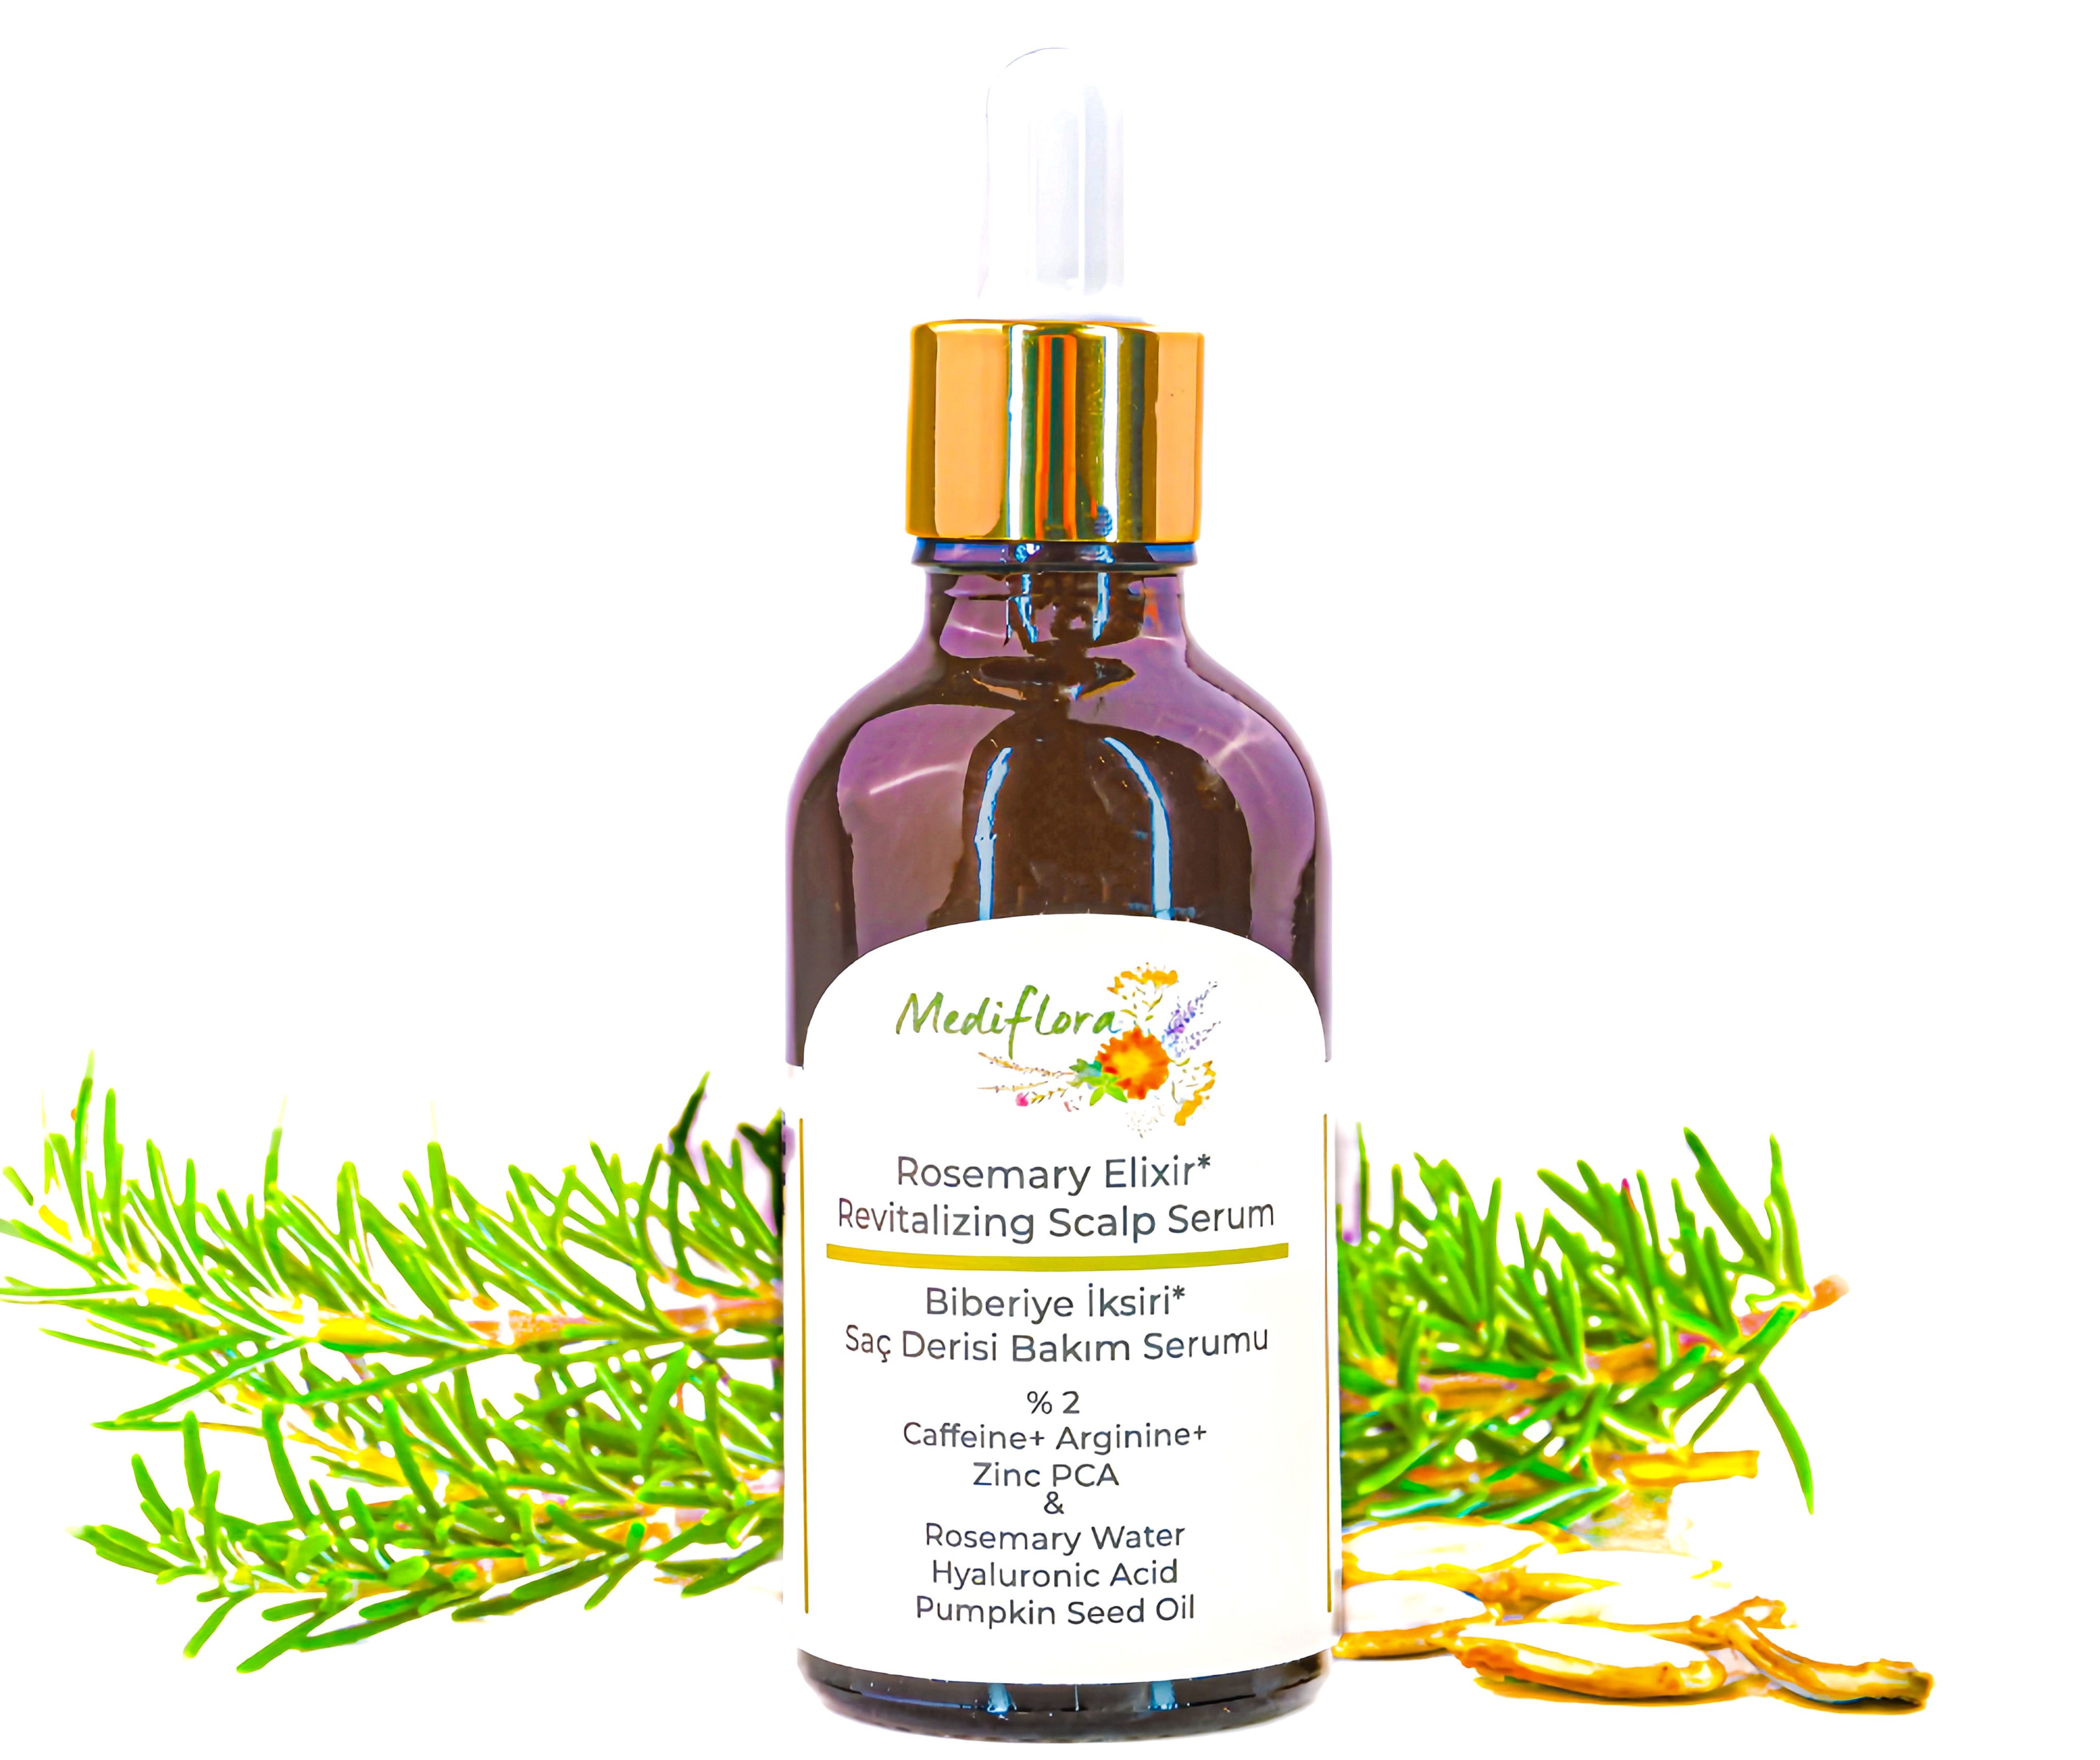 Rosemary Elixir Revitalizing Scalp Serum